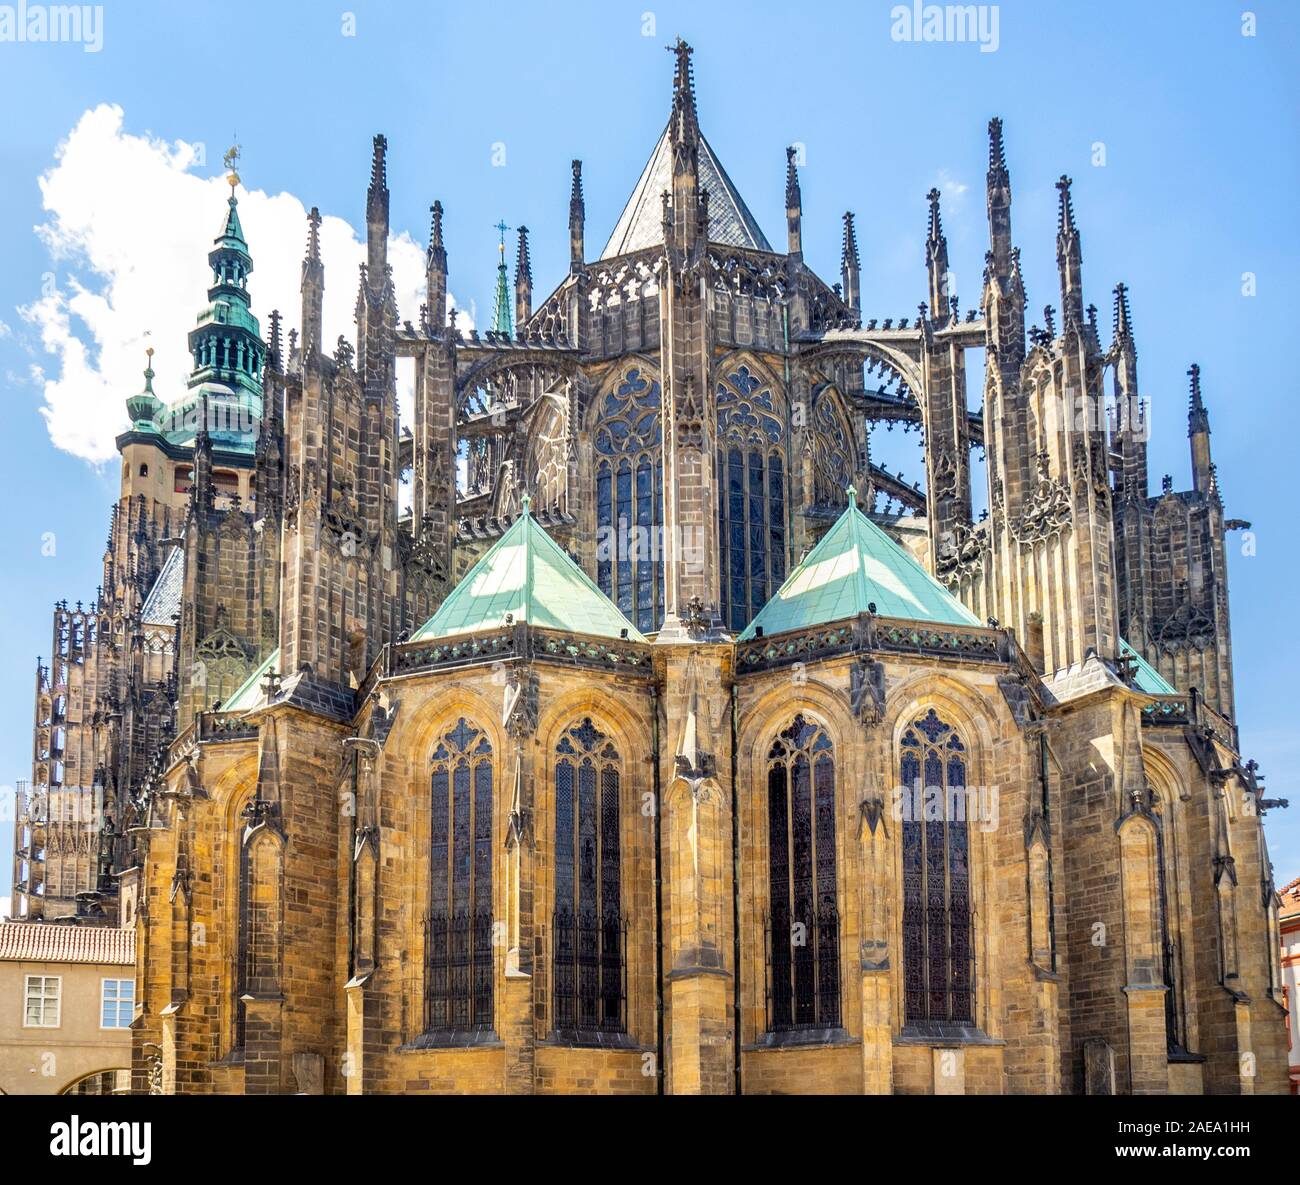 Apsis und fliegende Stützen der gotischen St. Veits-Kathedrale in Prag Schlosskomplex Prag Tschechische Republik. Stockfoto